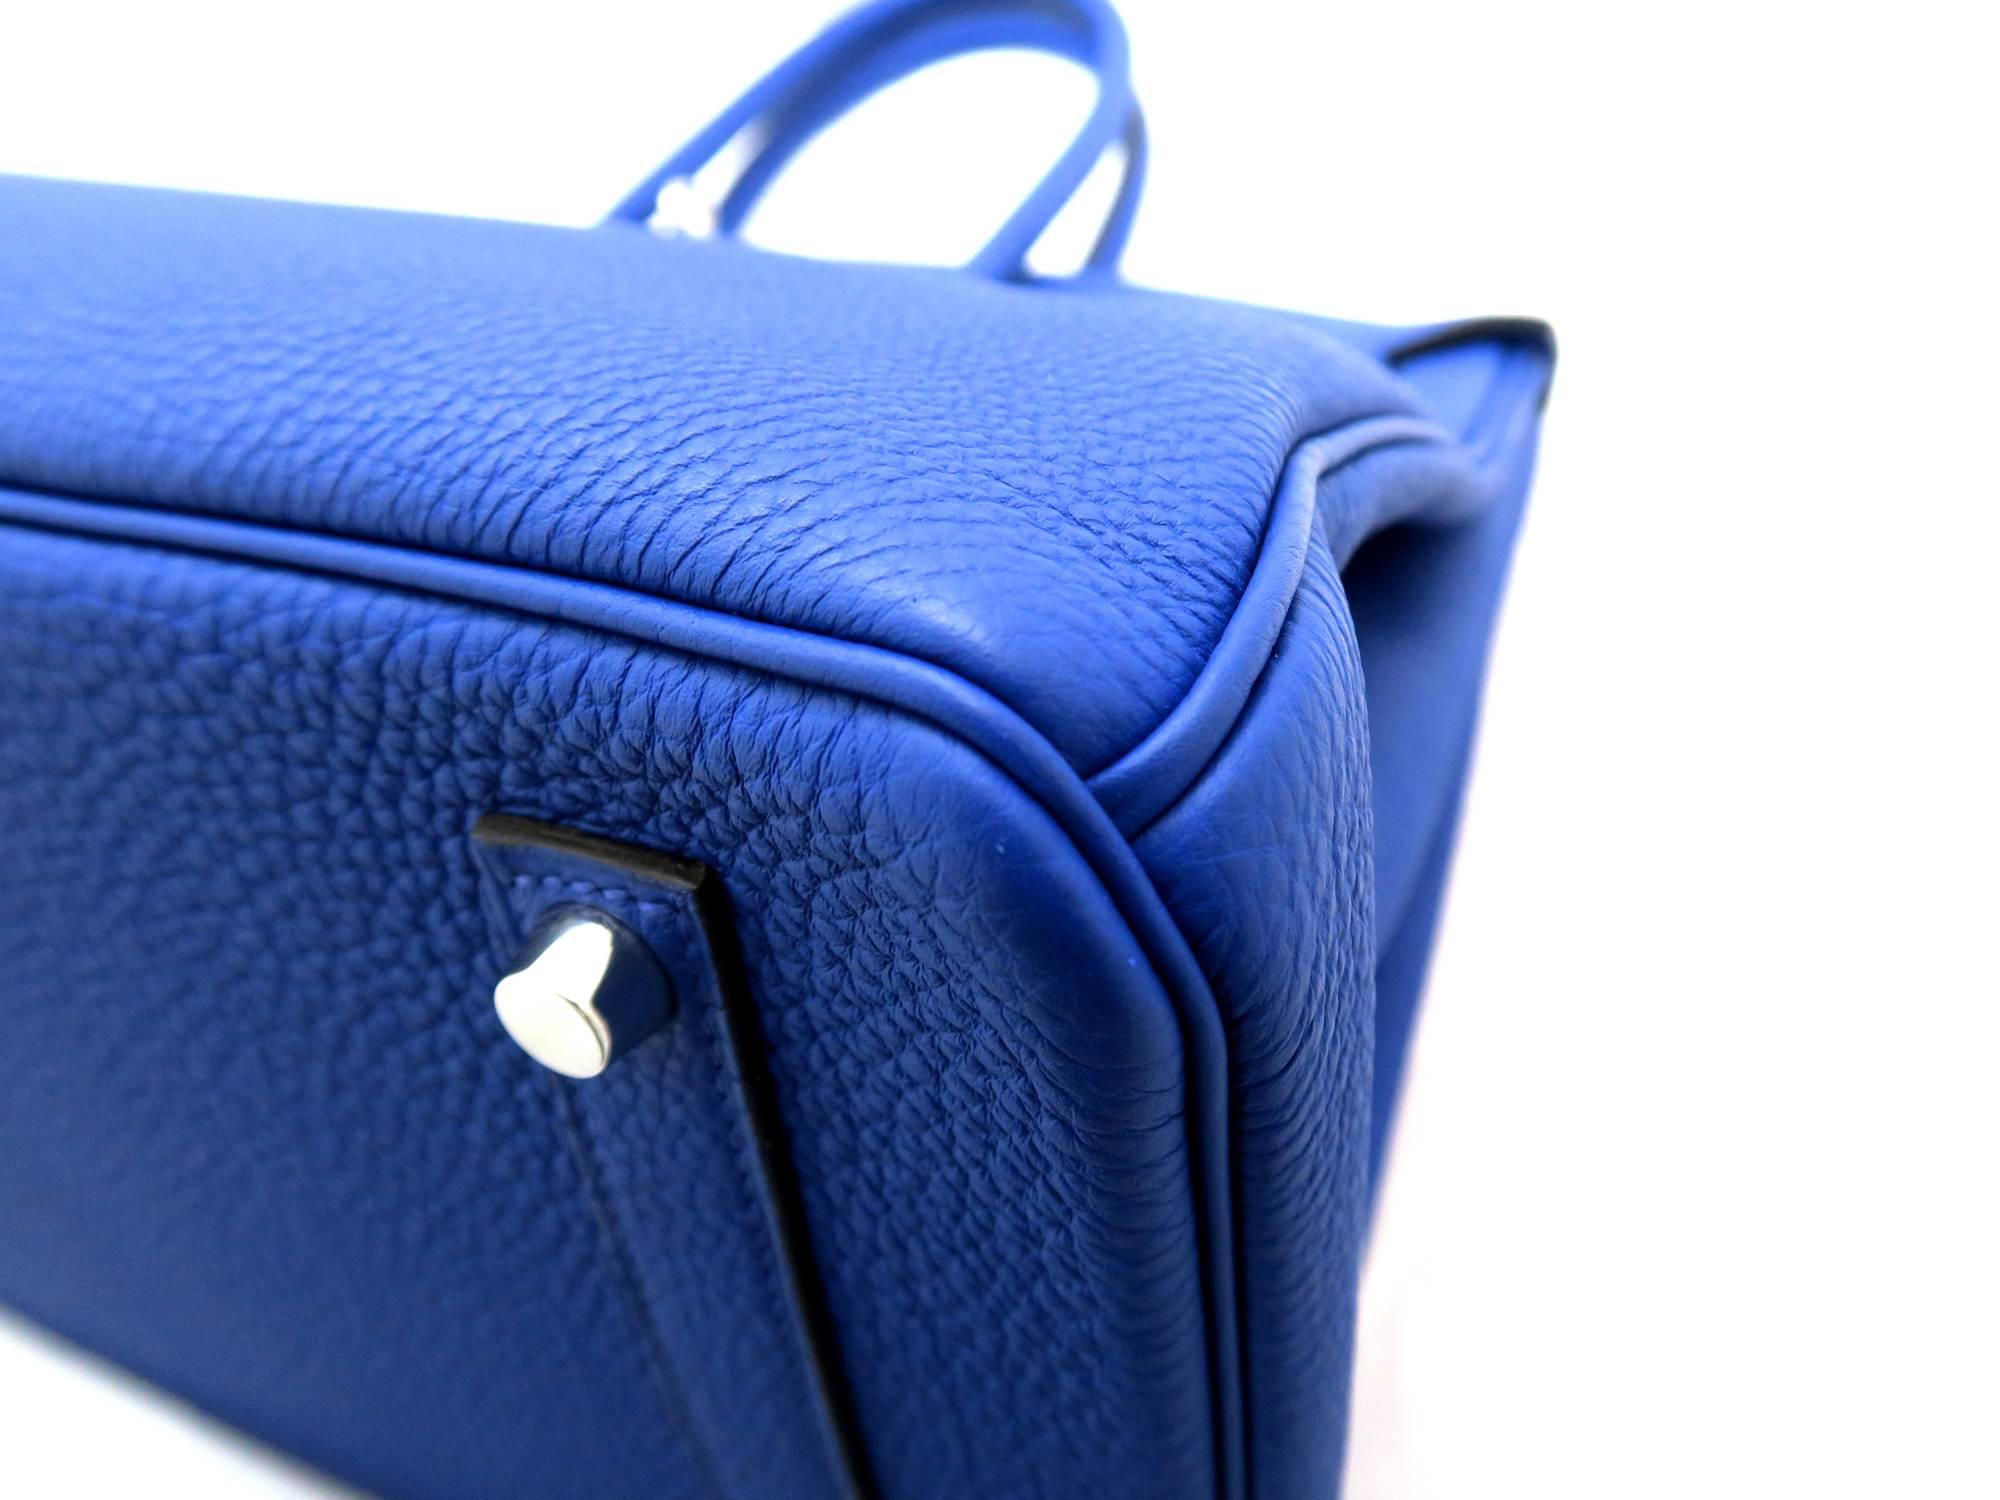 Hermes Birkin 35 Bleu Electric Togo Leather SHW Top Handle Bag 1